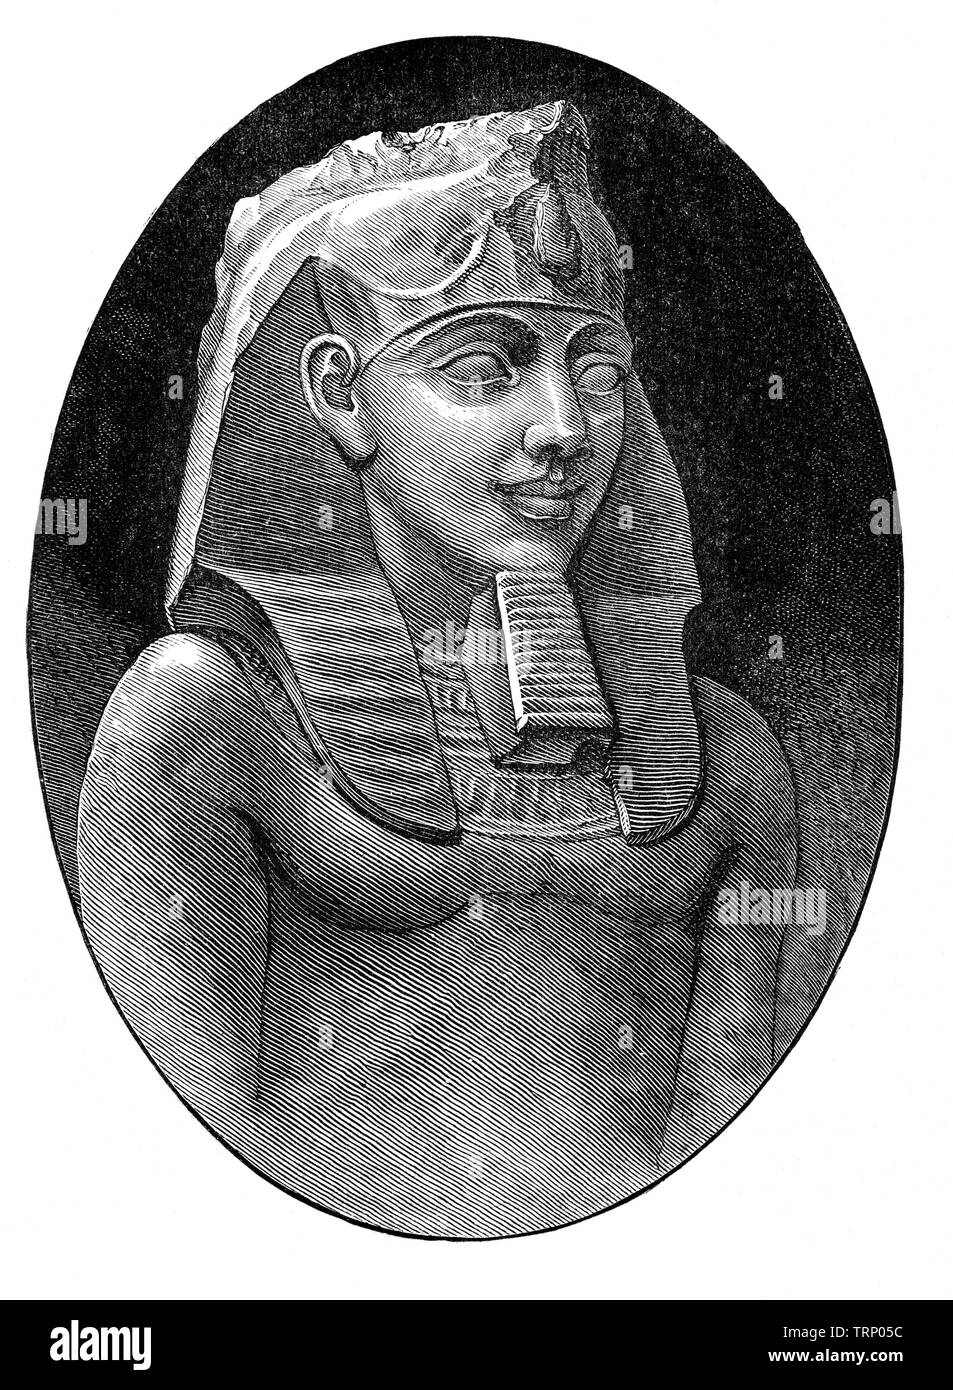 Ramses II auch als Ramses der Große, war der dritte Pharao der 19. Dynastie in Ägypten bekannt. Geboren C. 1303 v. Chr., er regierte von 1279 - 1213 und wird oft als das größte, berühmteste und mächtigste Pharao des Neuen Reiches angesehen. Seine Nachfolger und späteren Ägypter es der "Große Vater" genannt. Stockfoto